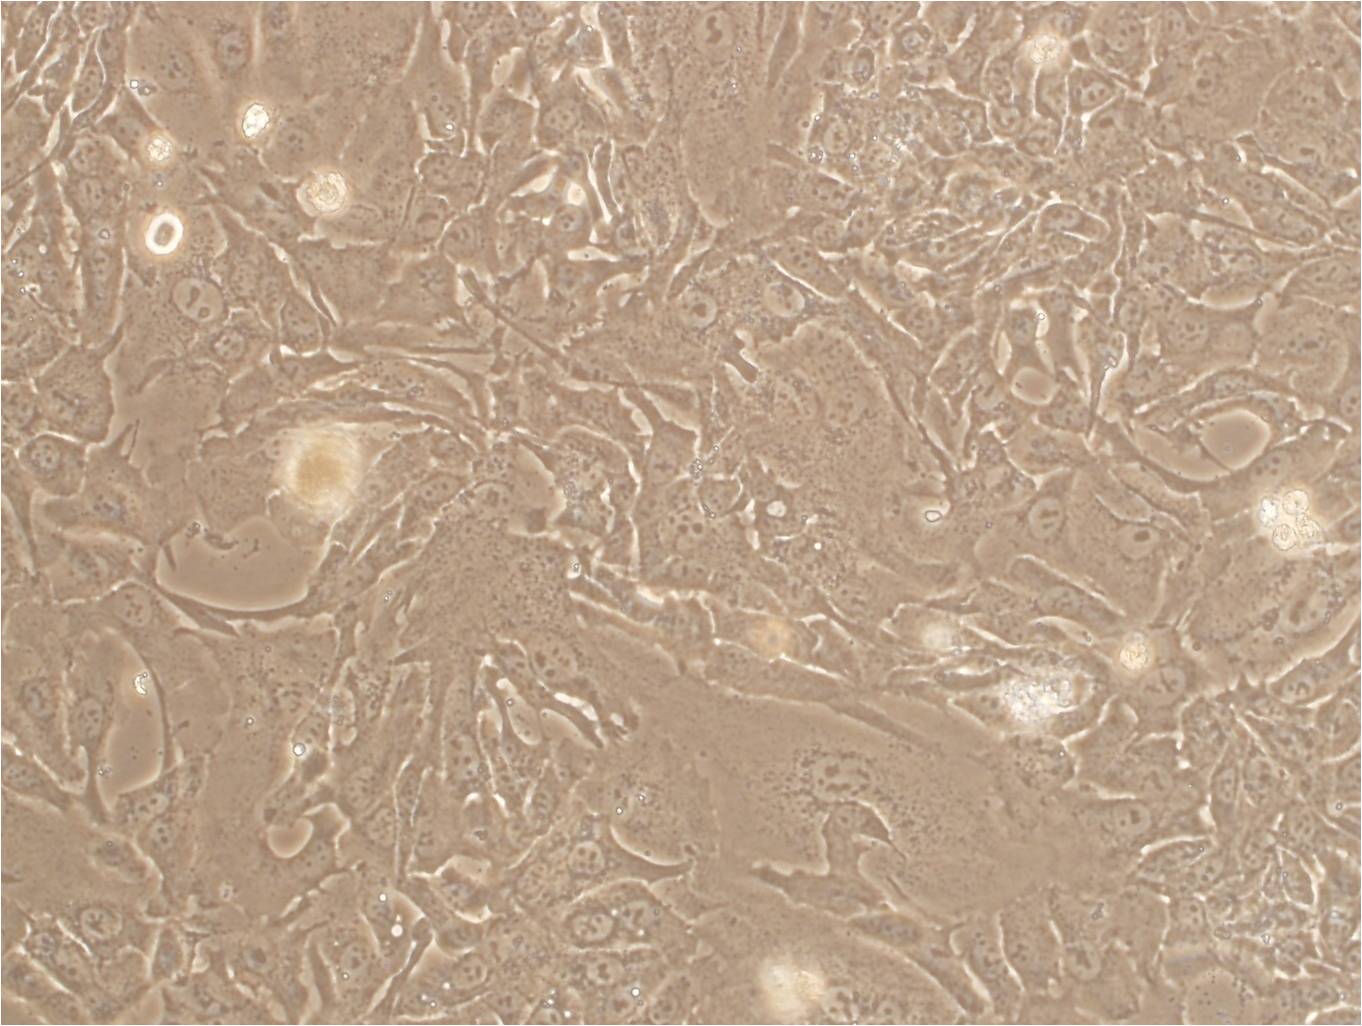 OVTOKO epithelioid cells人卵巢透明细胞癌细胞系